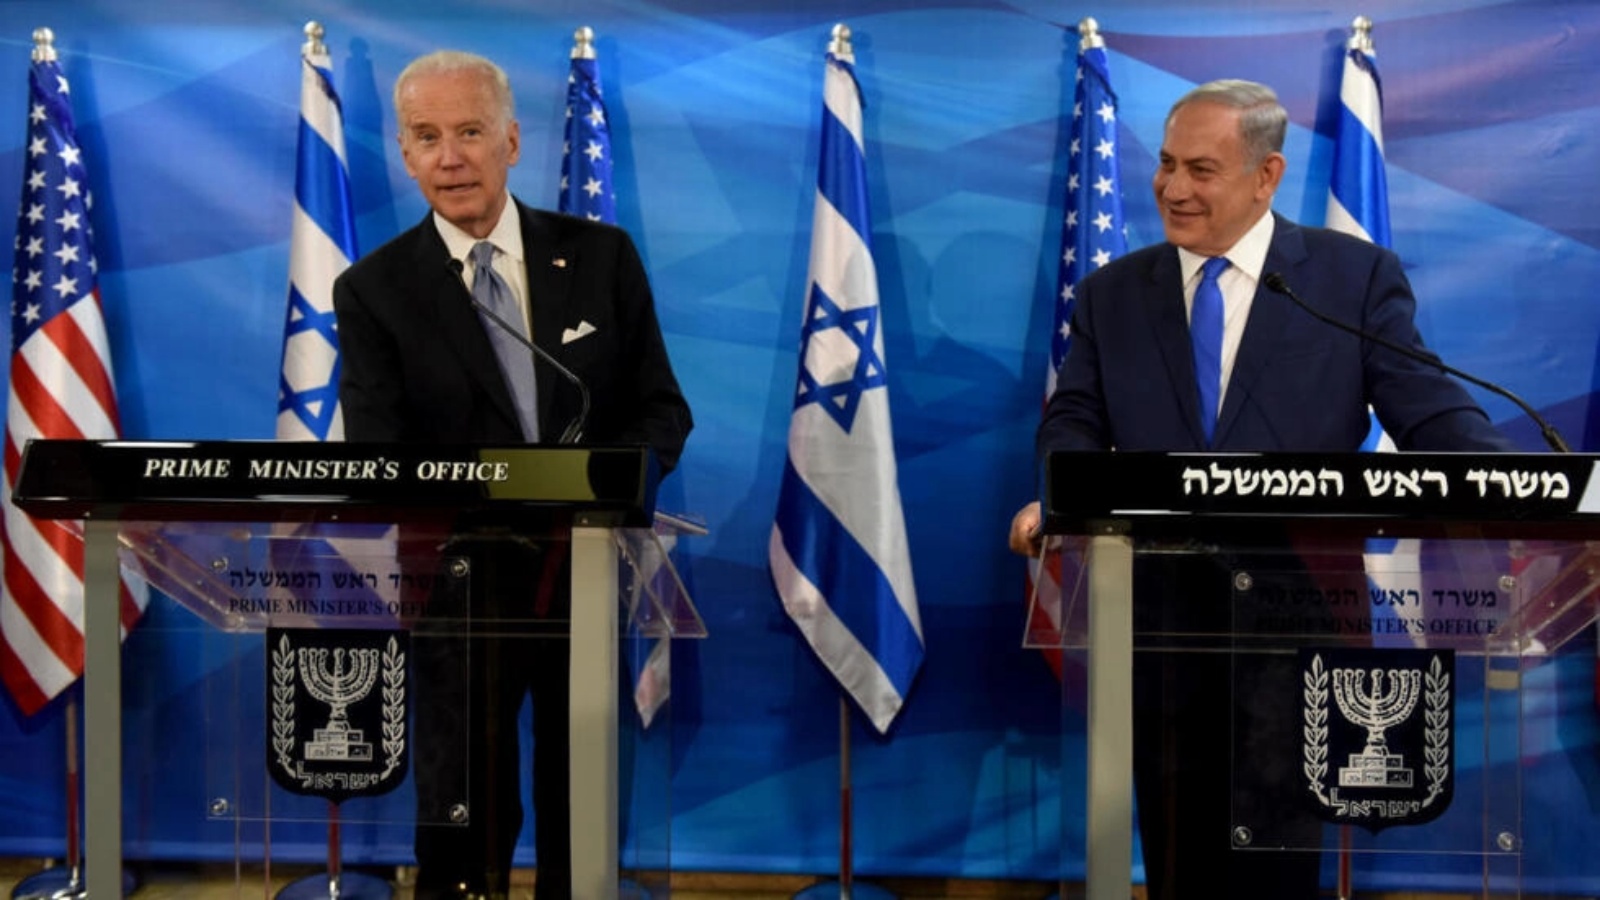 الصورة تعود إلى عام 2016 حين كان جو بايدن حينها نائب رئيس الولايات المتحدة رئيس الوزراء، أثناء مقابلة مع بنيامين نتانياهو